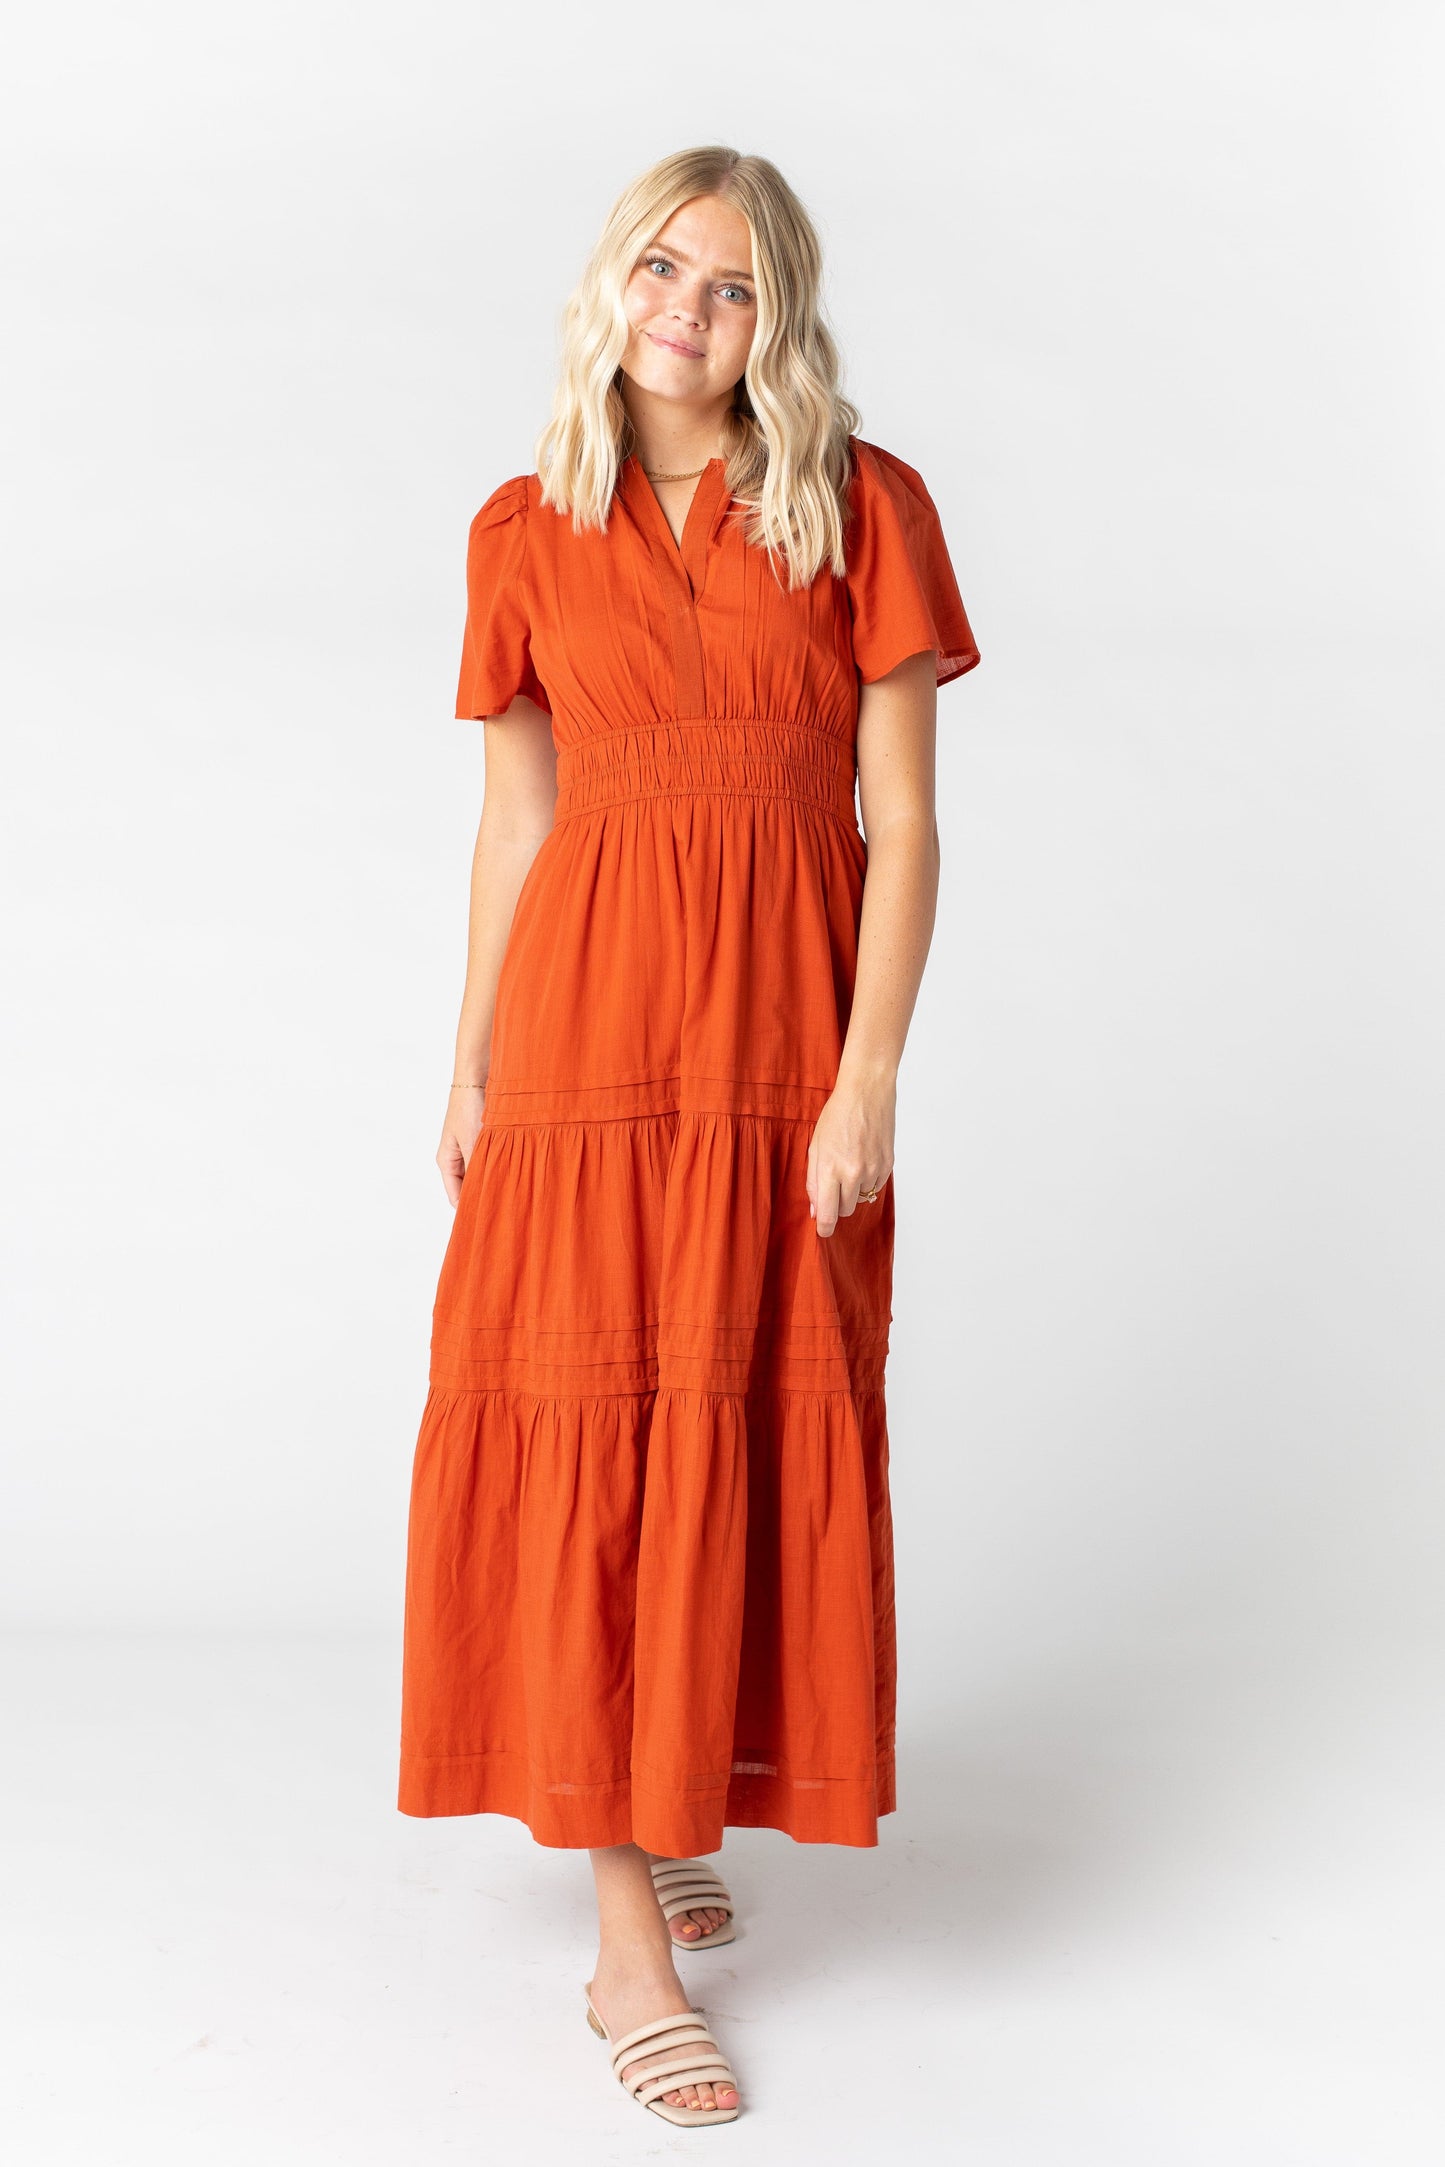 Citrus-Parkland Dress WOMEN'S DRESS Citrus Burnt Orange L 